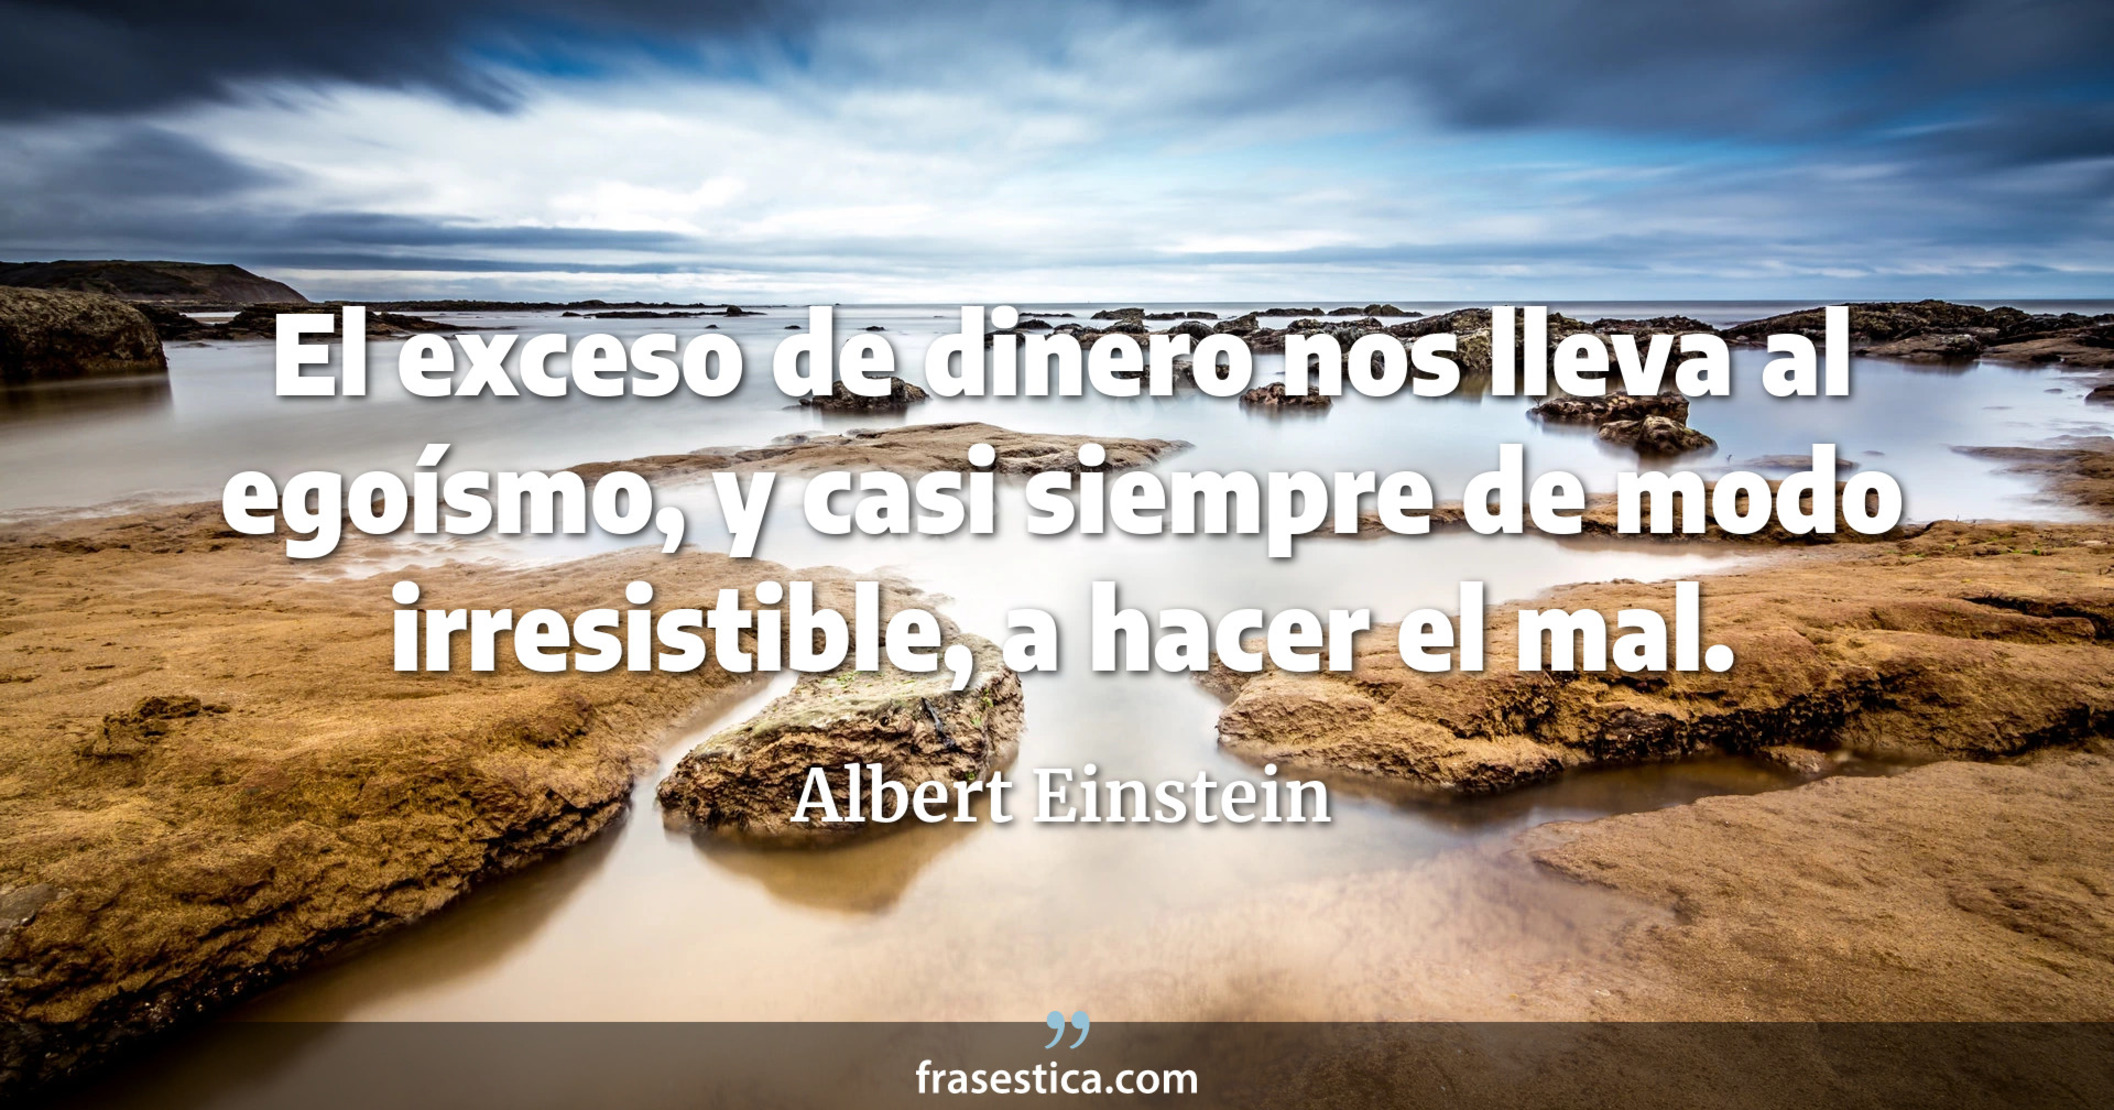 El exceso de dinero nos lleva al egoísmo, y casi siempre de modo irresistible, a hacer el mal. - Albert Einstein